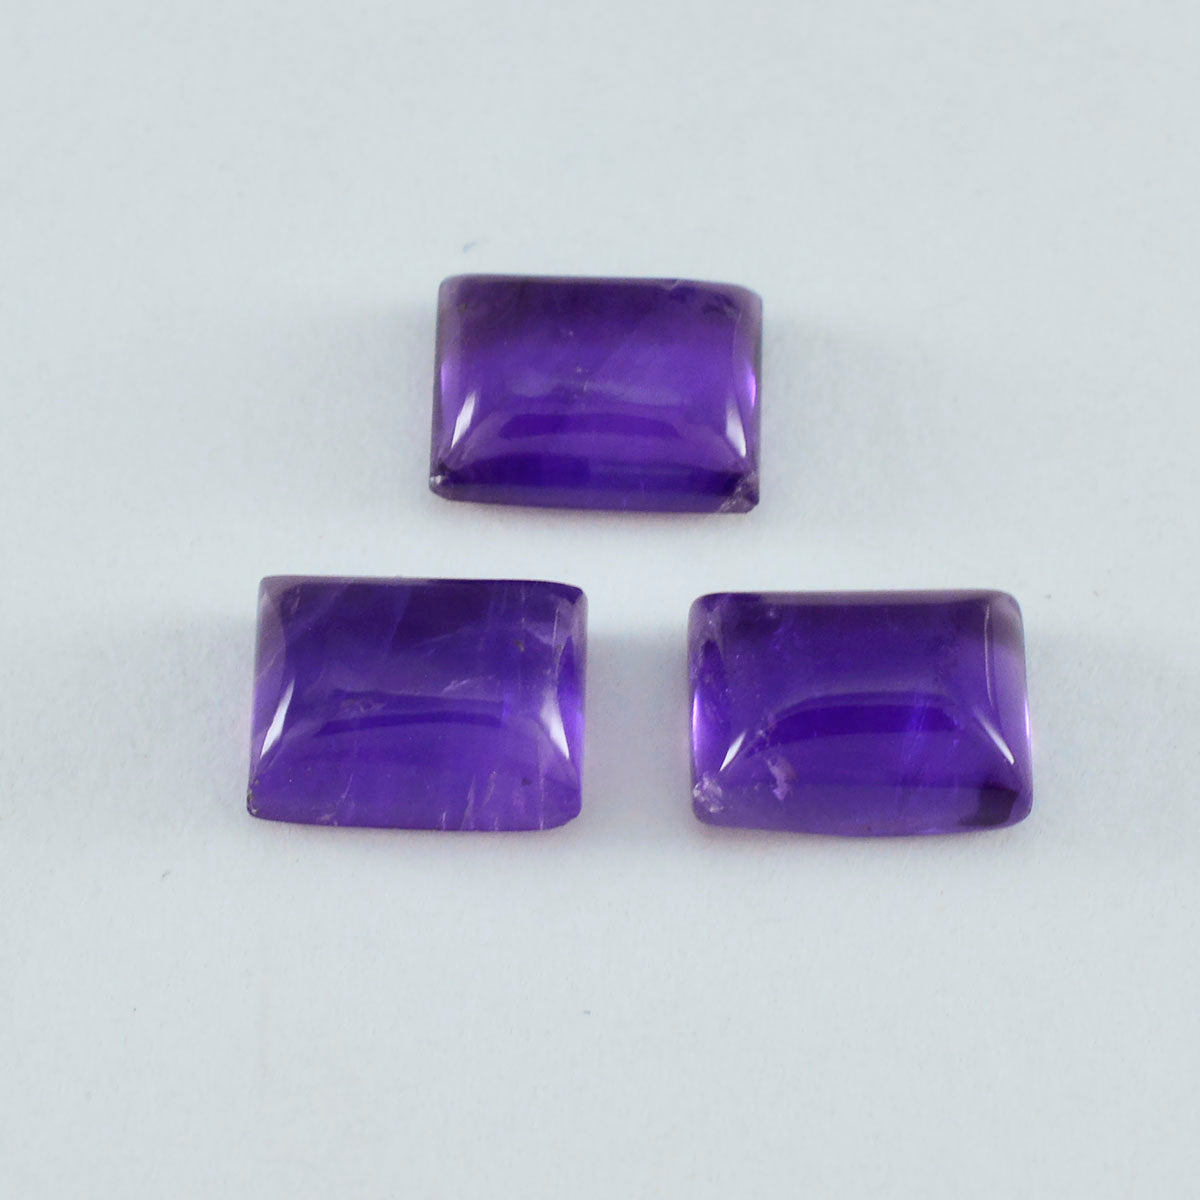 riyogems 1 шт. фиолетовый аметист кабошон 5x7 мм восьмиугольной формы прекрасный качественный драгоценный камень